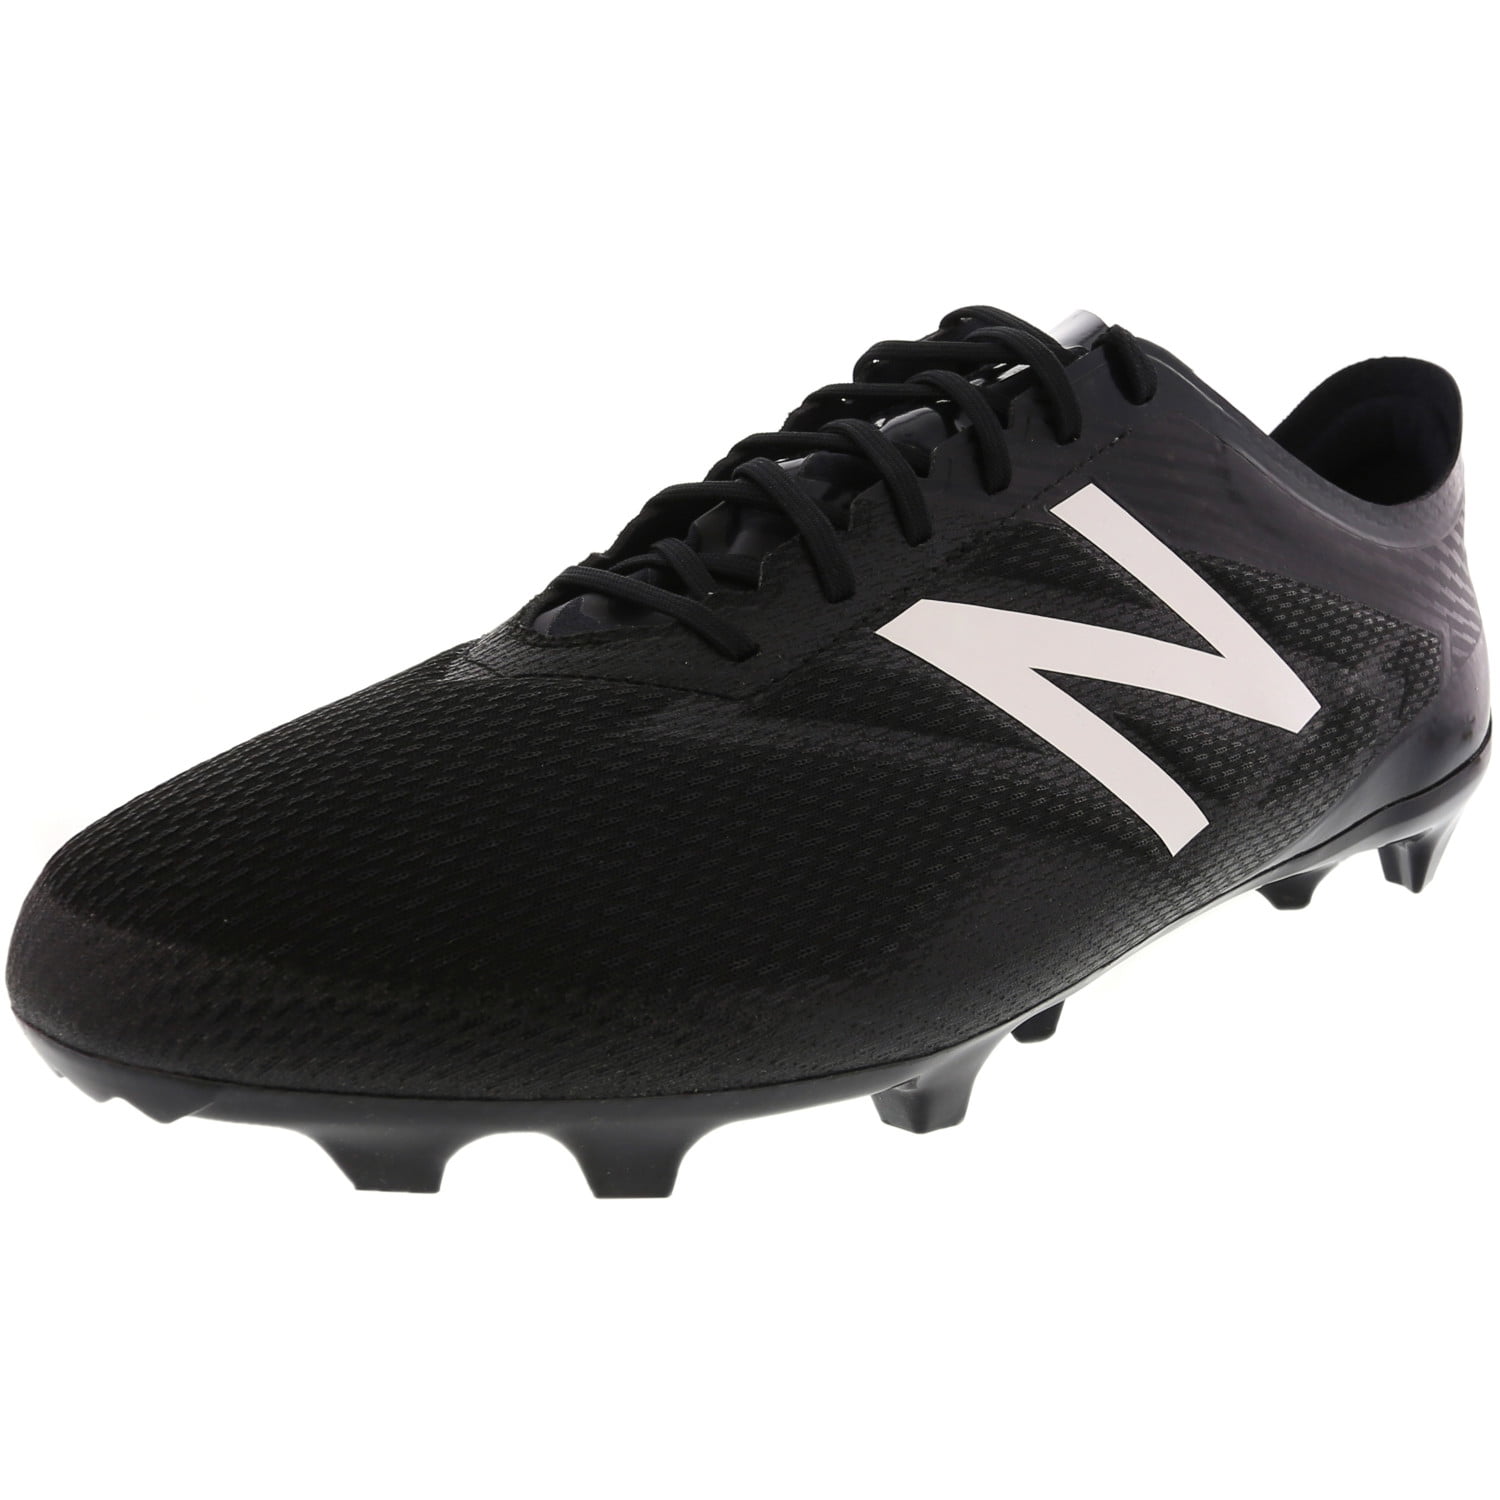 Msfpf B33 Ankle-High Soccer Shoe - 10.5 